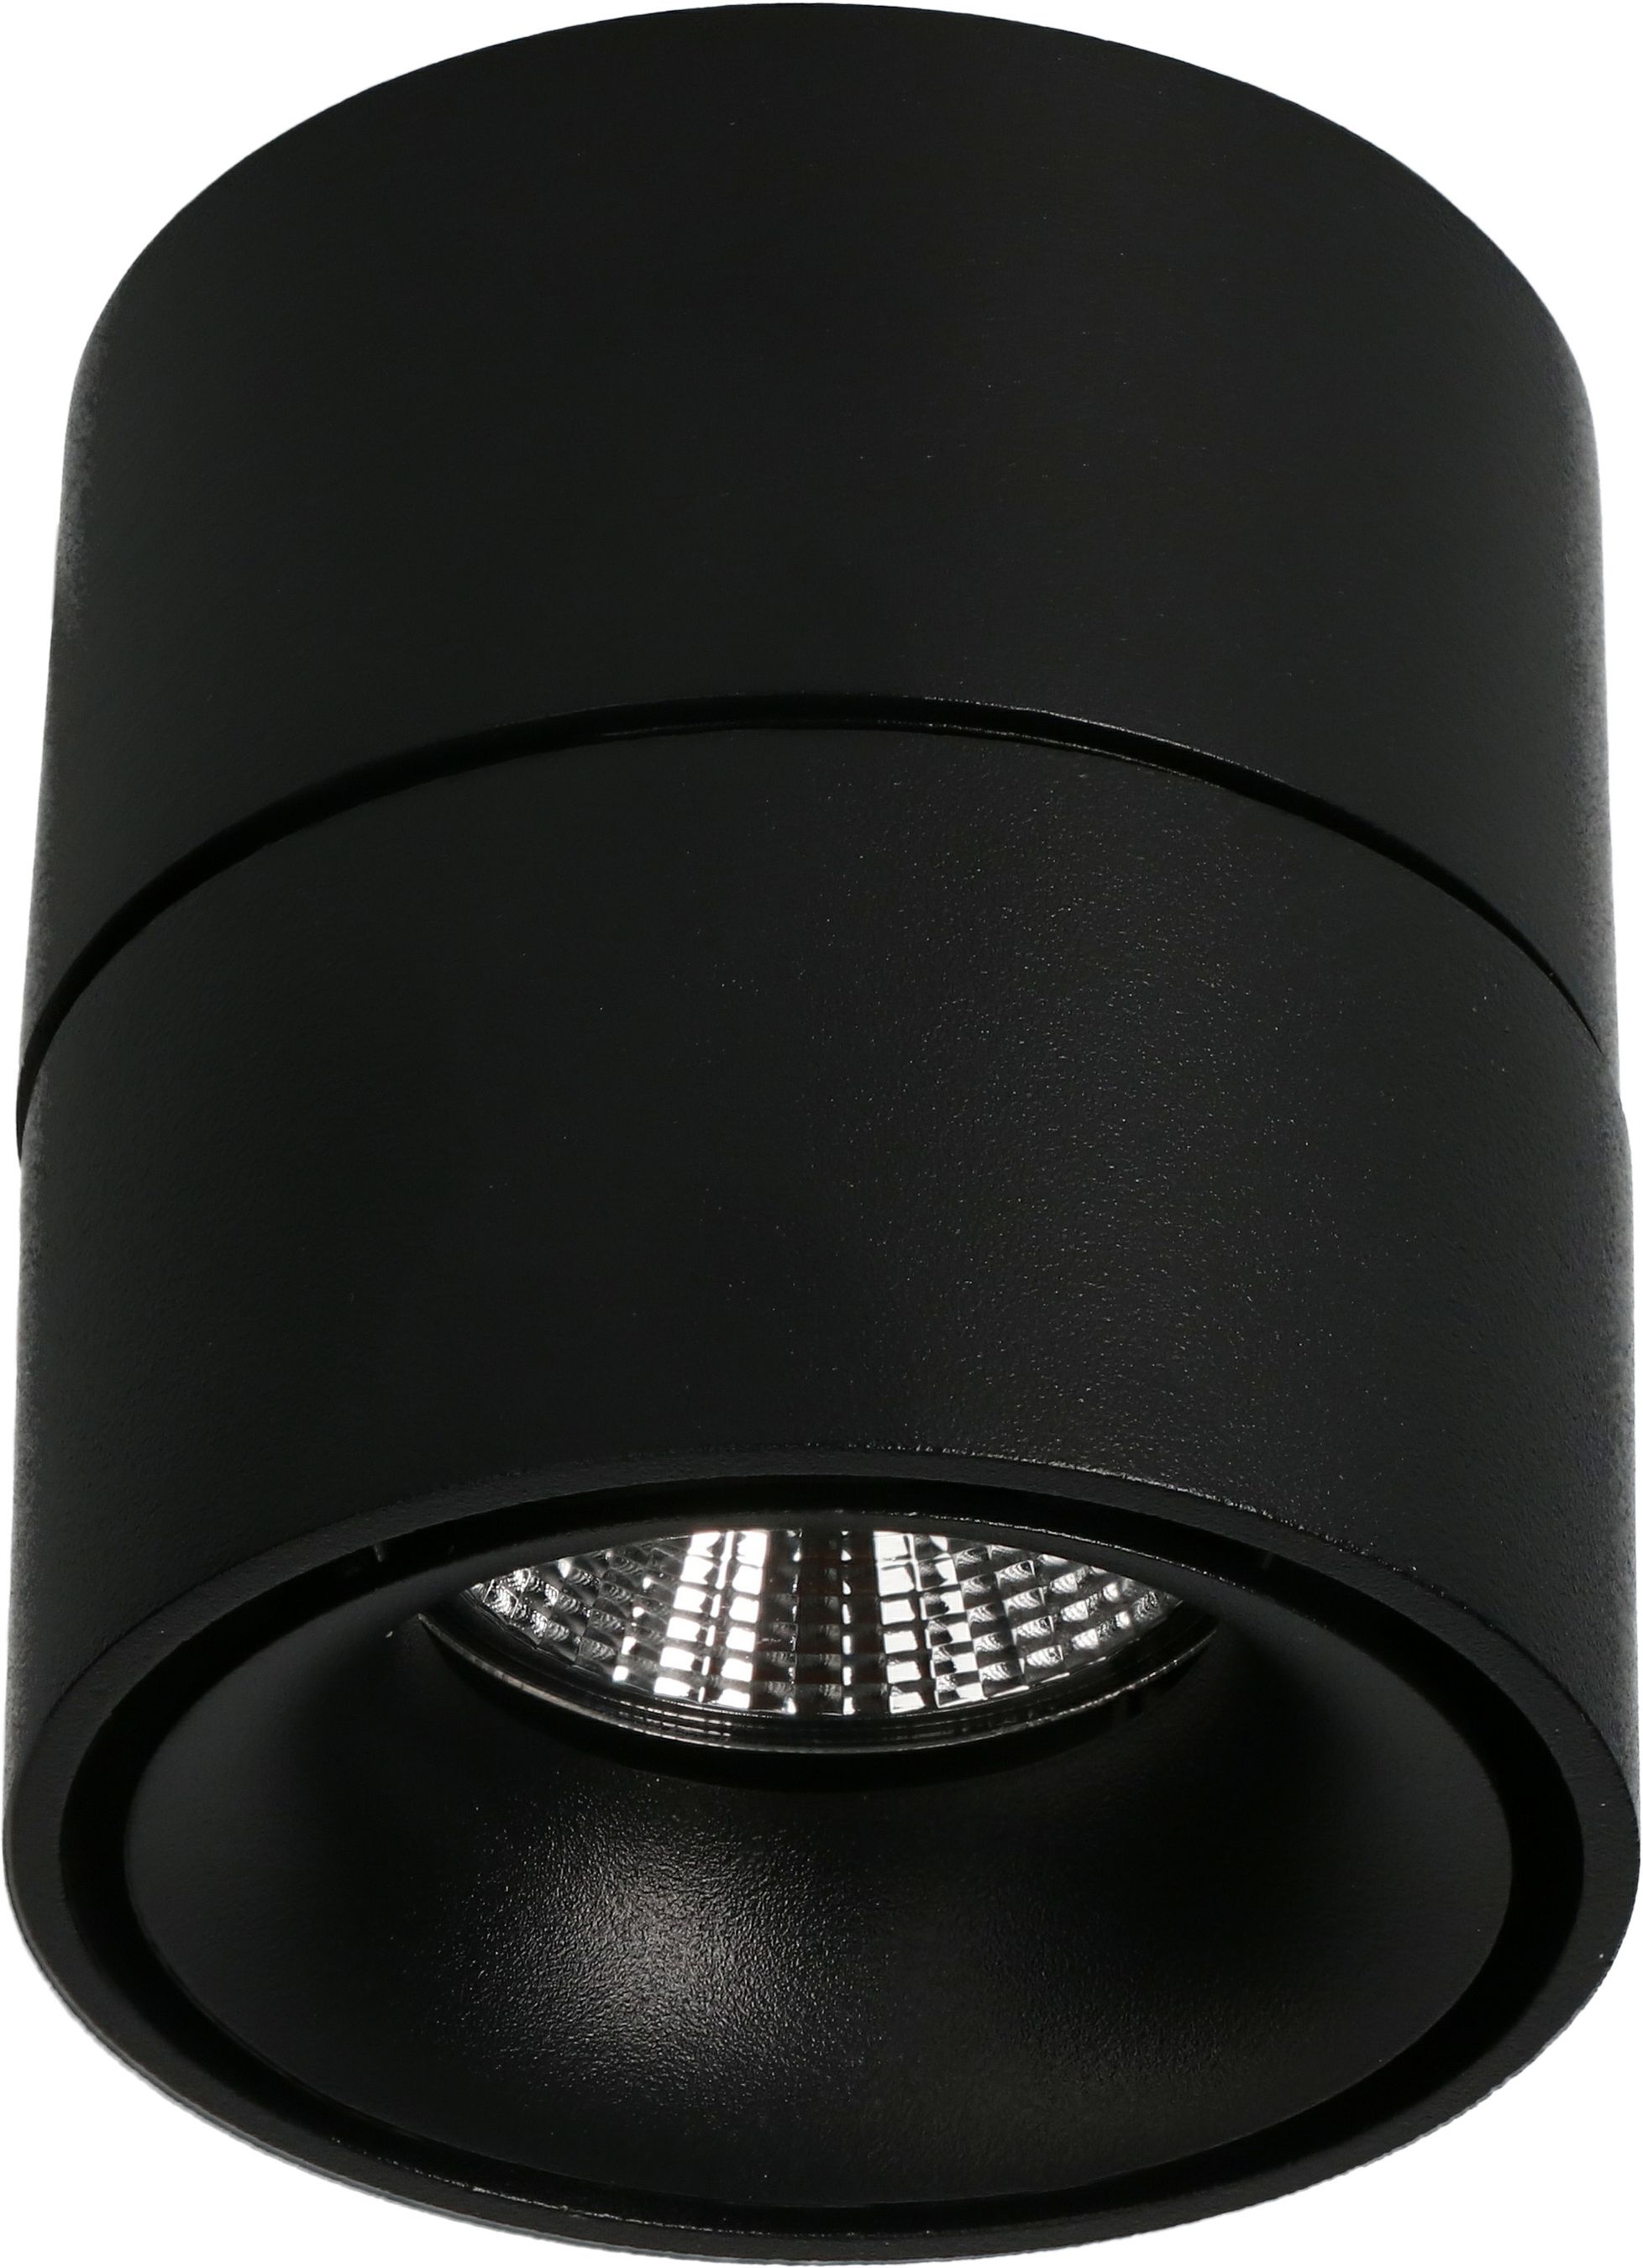 LED plafonnier SHINE mat noir 3000K 760lm 36°